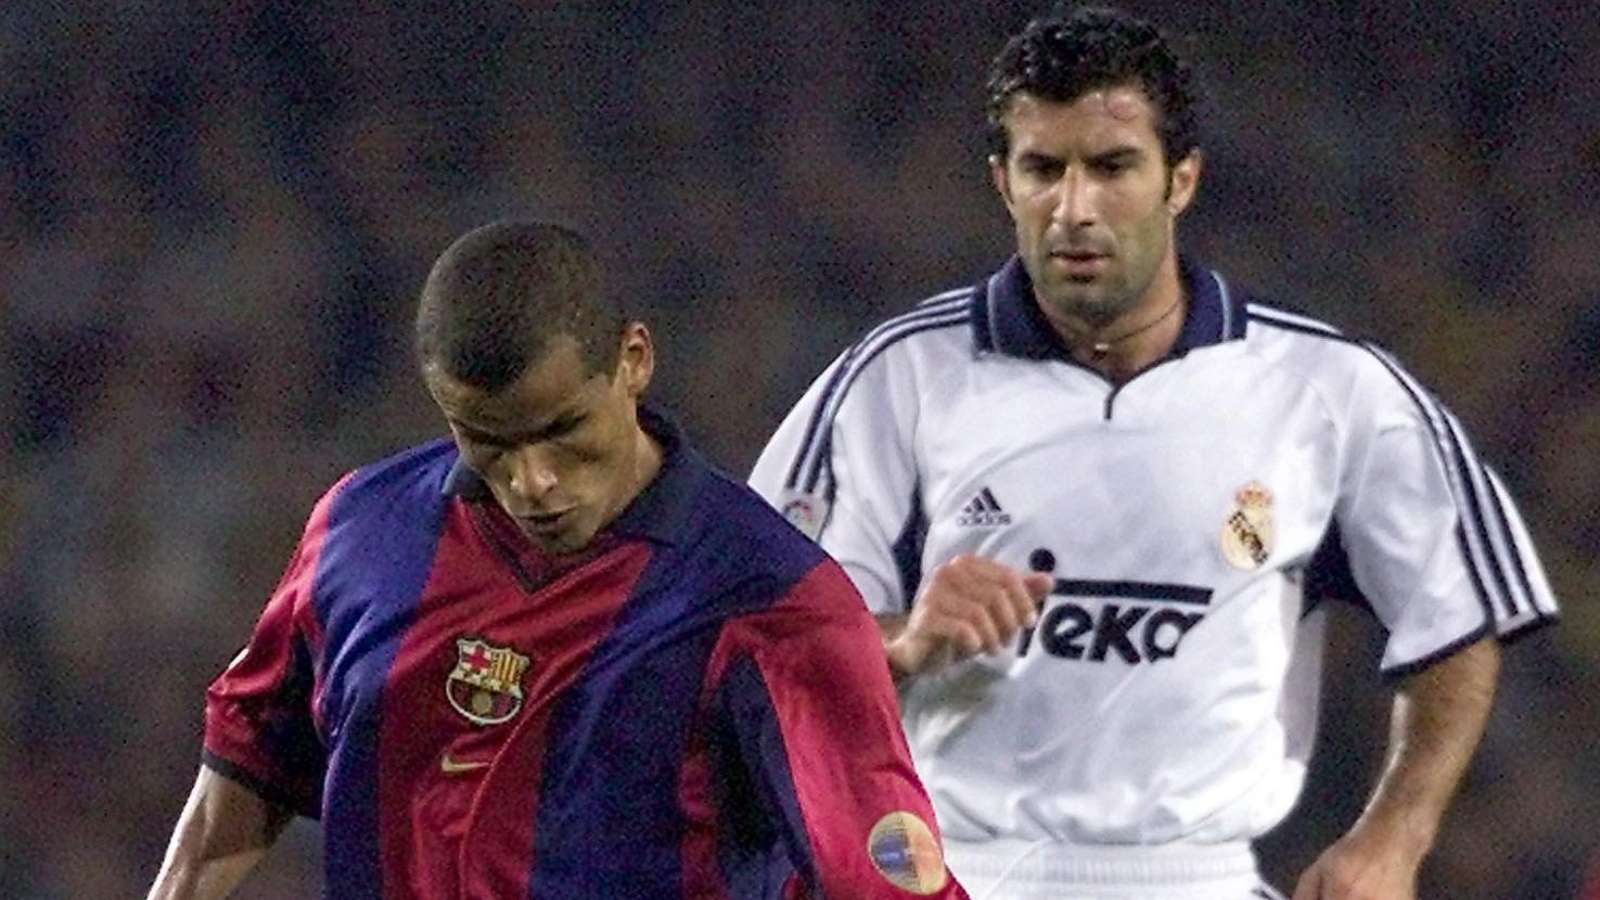 rivaldo luis Figo 20 aniversario regreso Camp Nou Barcelona Real Madrid 2000